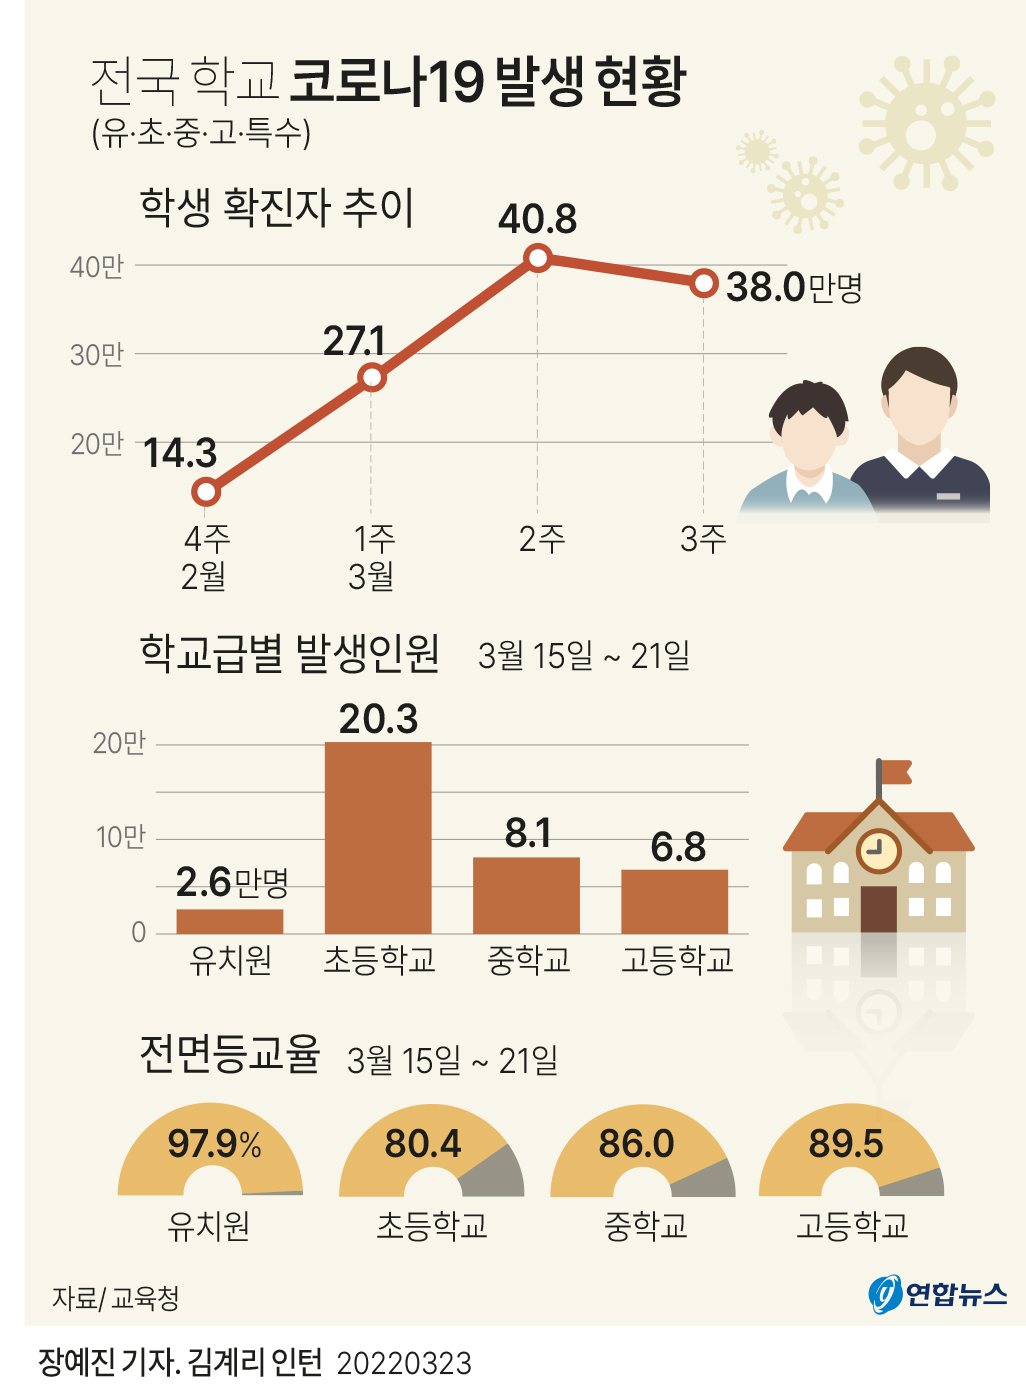 [그래픽] 전국 학교 코로나19 발생 현황